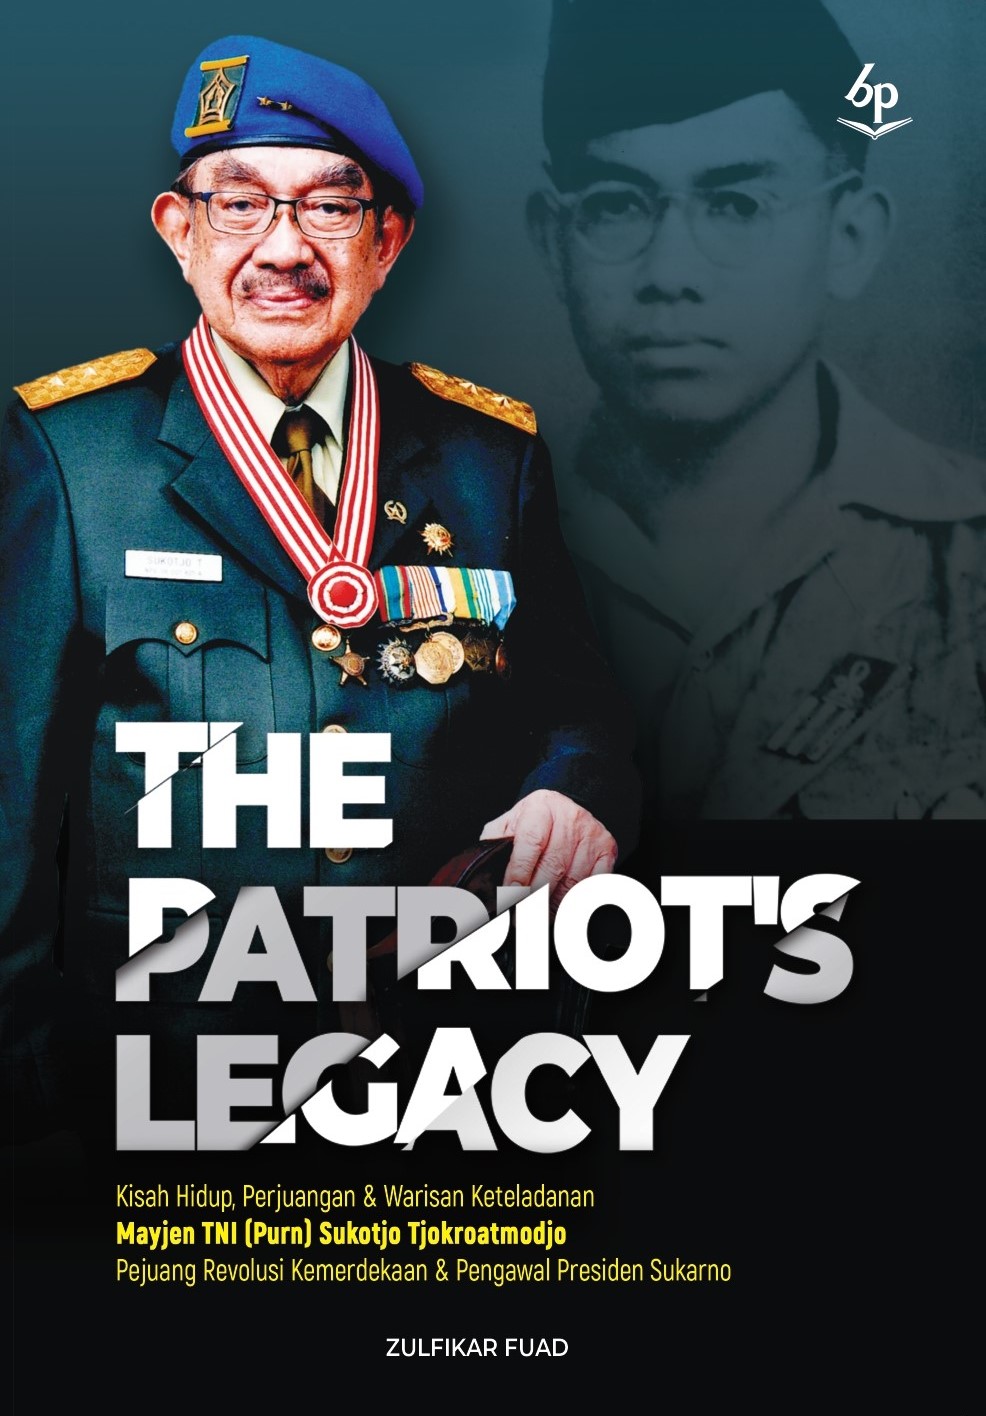 The patriot's legacy :  kisah hidup perjuangan & warisan keteladanan Mayjen TNI (Purn) Sukotjo Tjokroatmodjo pejuan revolusi kemerdekaan & pengawal  Presiden Sukarno